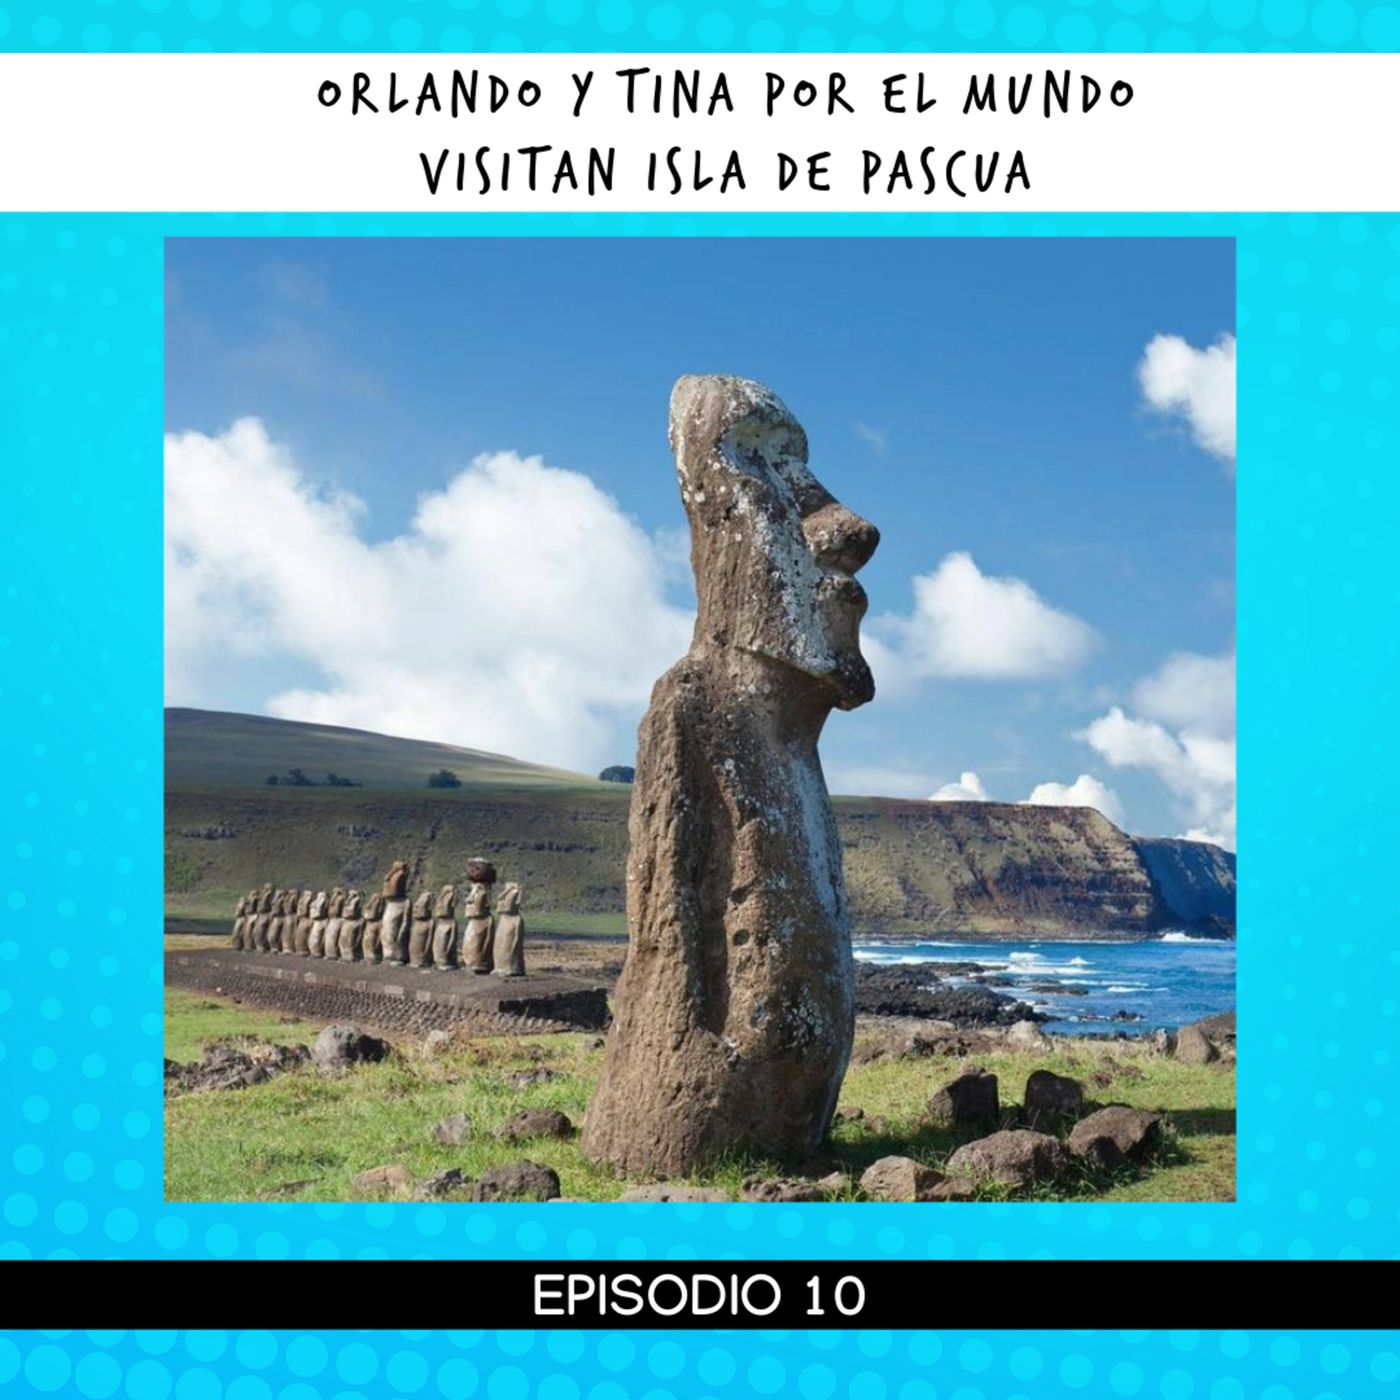 Cuento infantil: Orlando y Tina por el mundo visitan Isla de Pascua. Temporada 19 Episodio 10